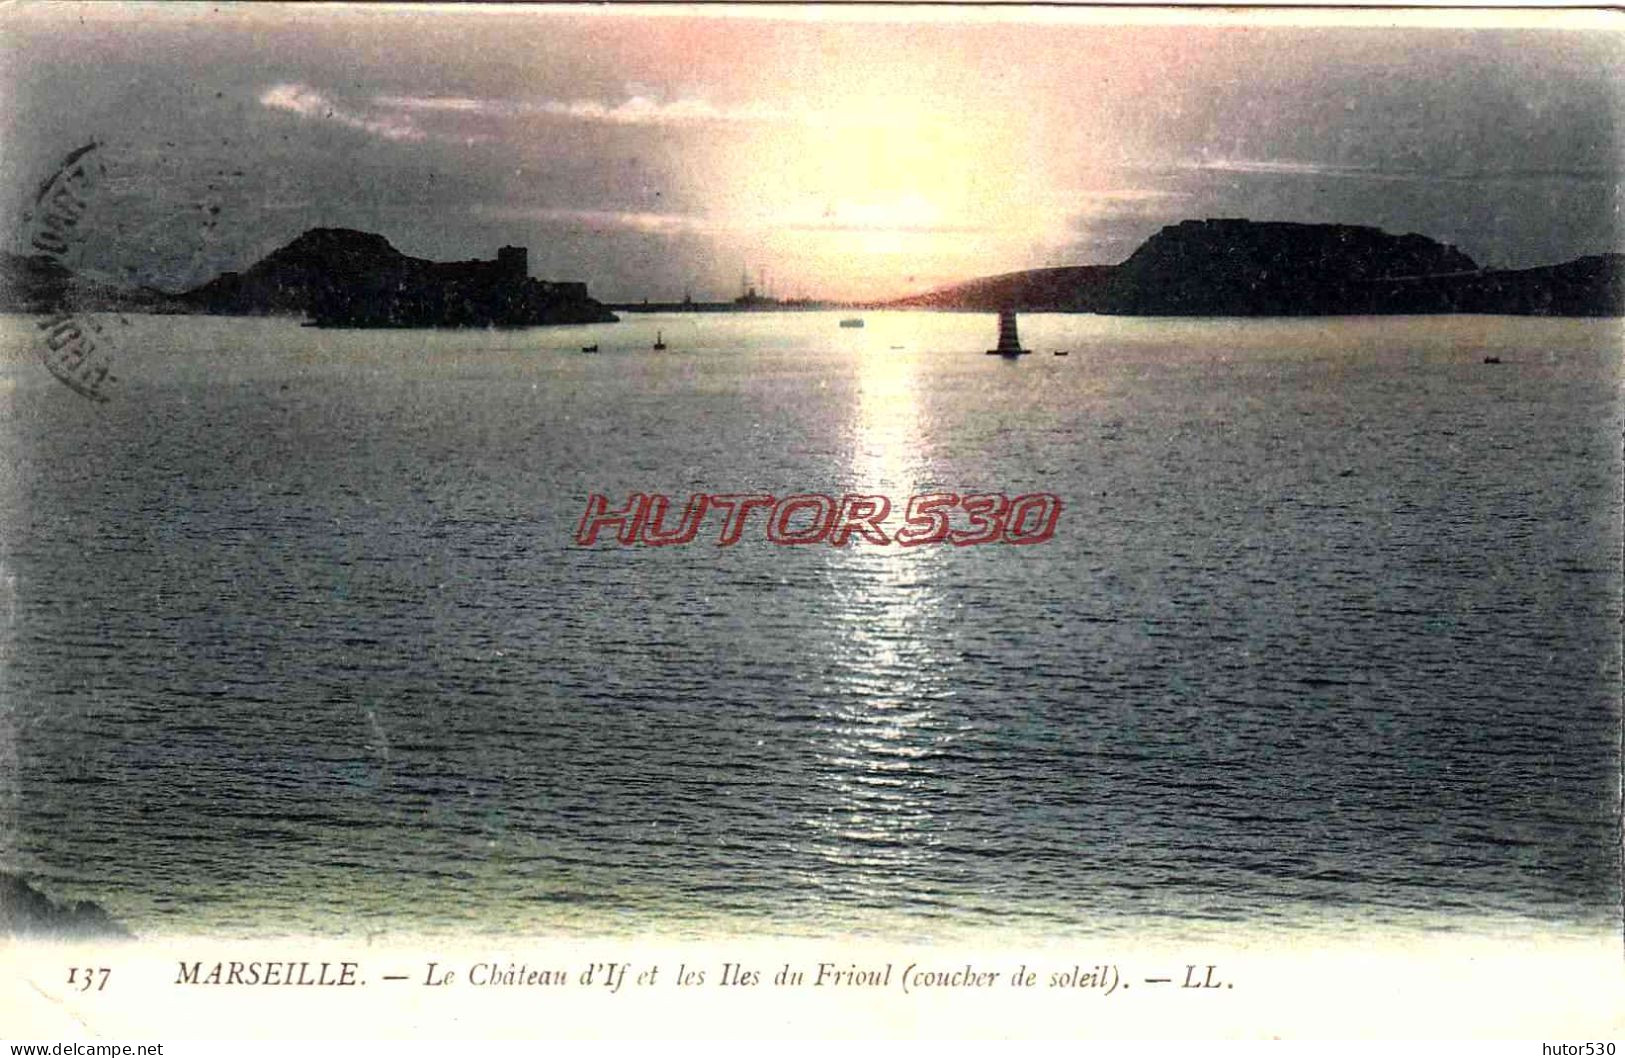 CPA MARSEILLE - LE CHATEAU D'IF - COUCHER DE SOLEIL - Festung (Château D'If), Frioul, Inseln...